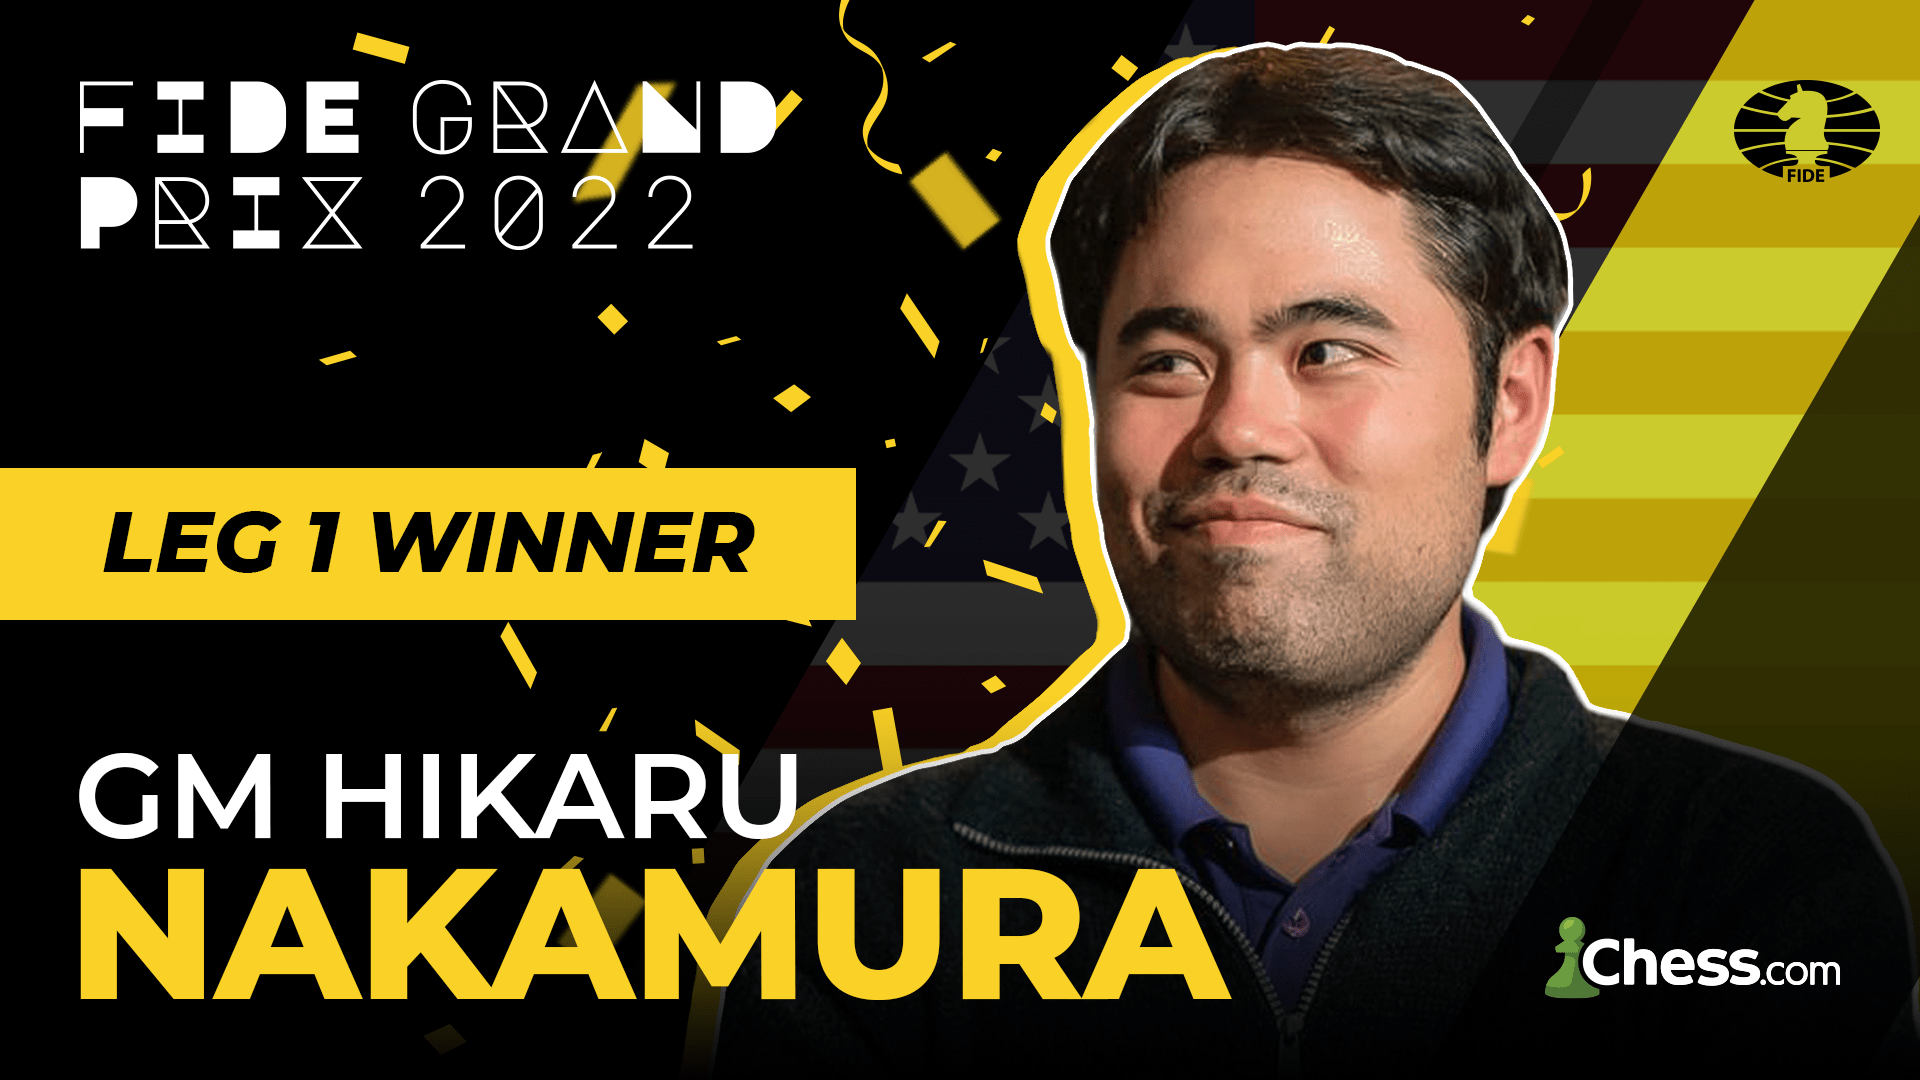 Nakamura Early Winner Of Series: 2022 FIDE Grand Prix Berlin Leg 3